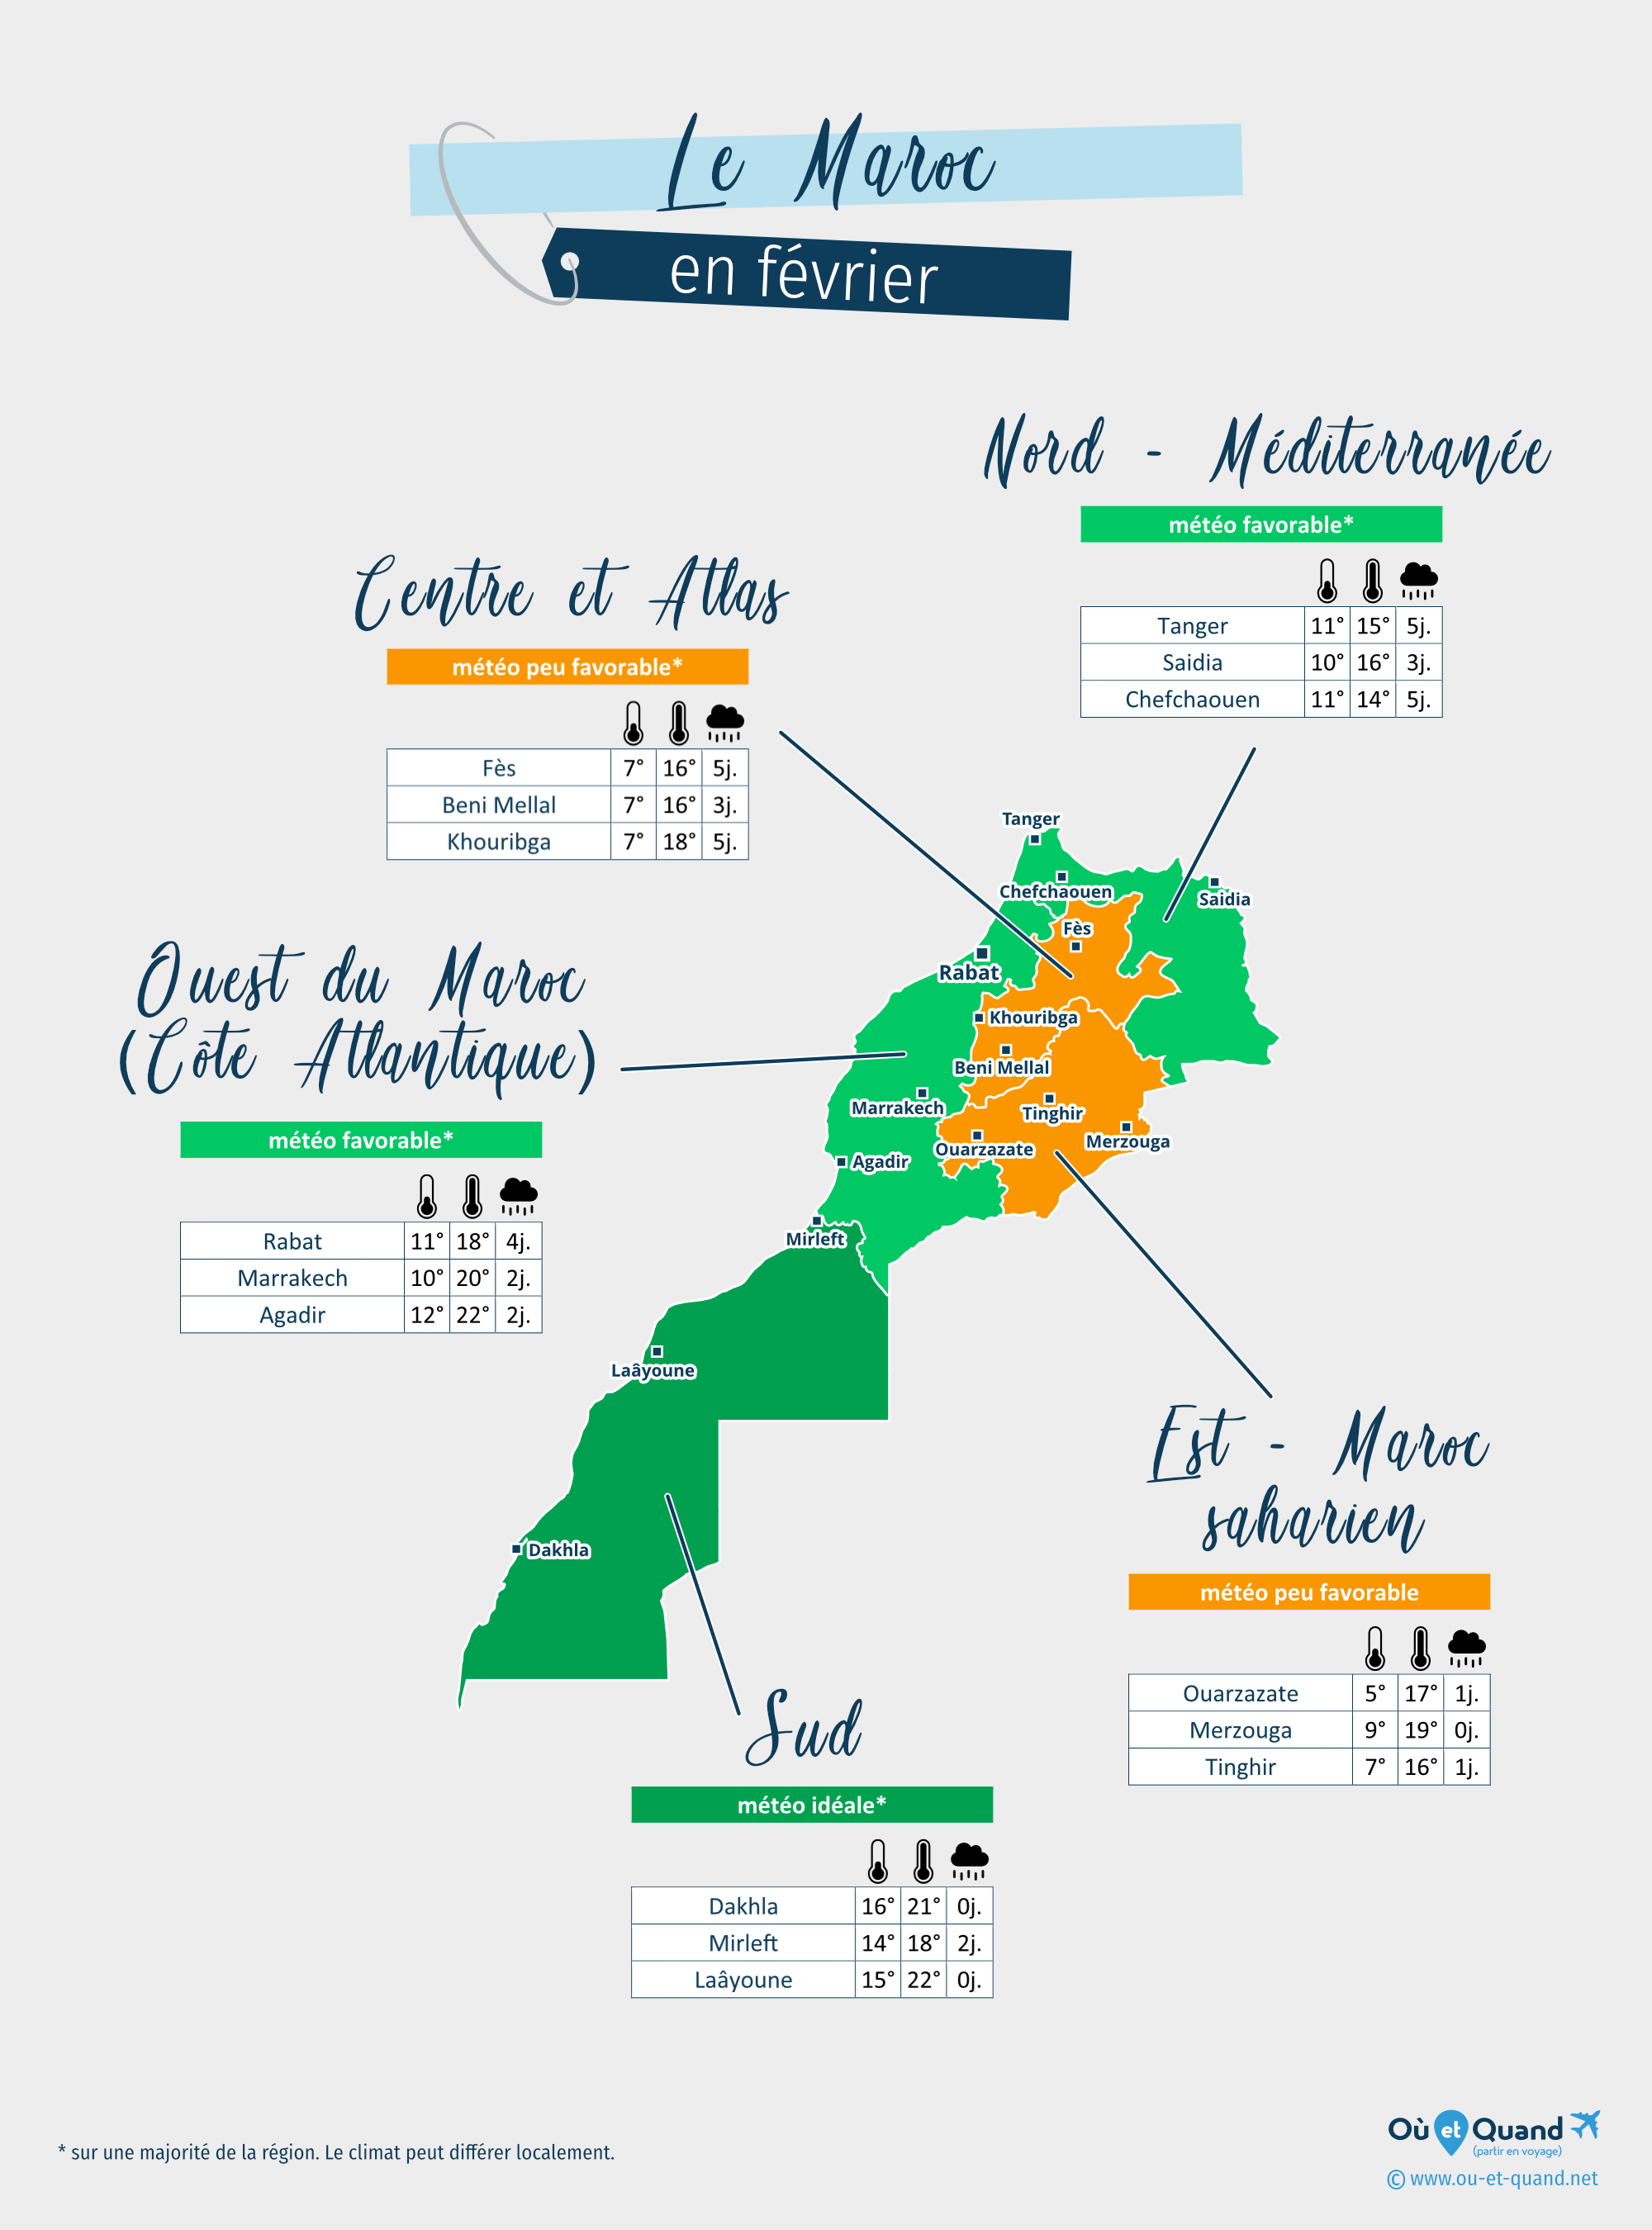 Carte de la météo en février dans les régions du Maroc